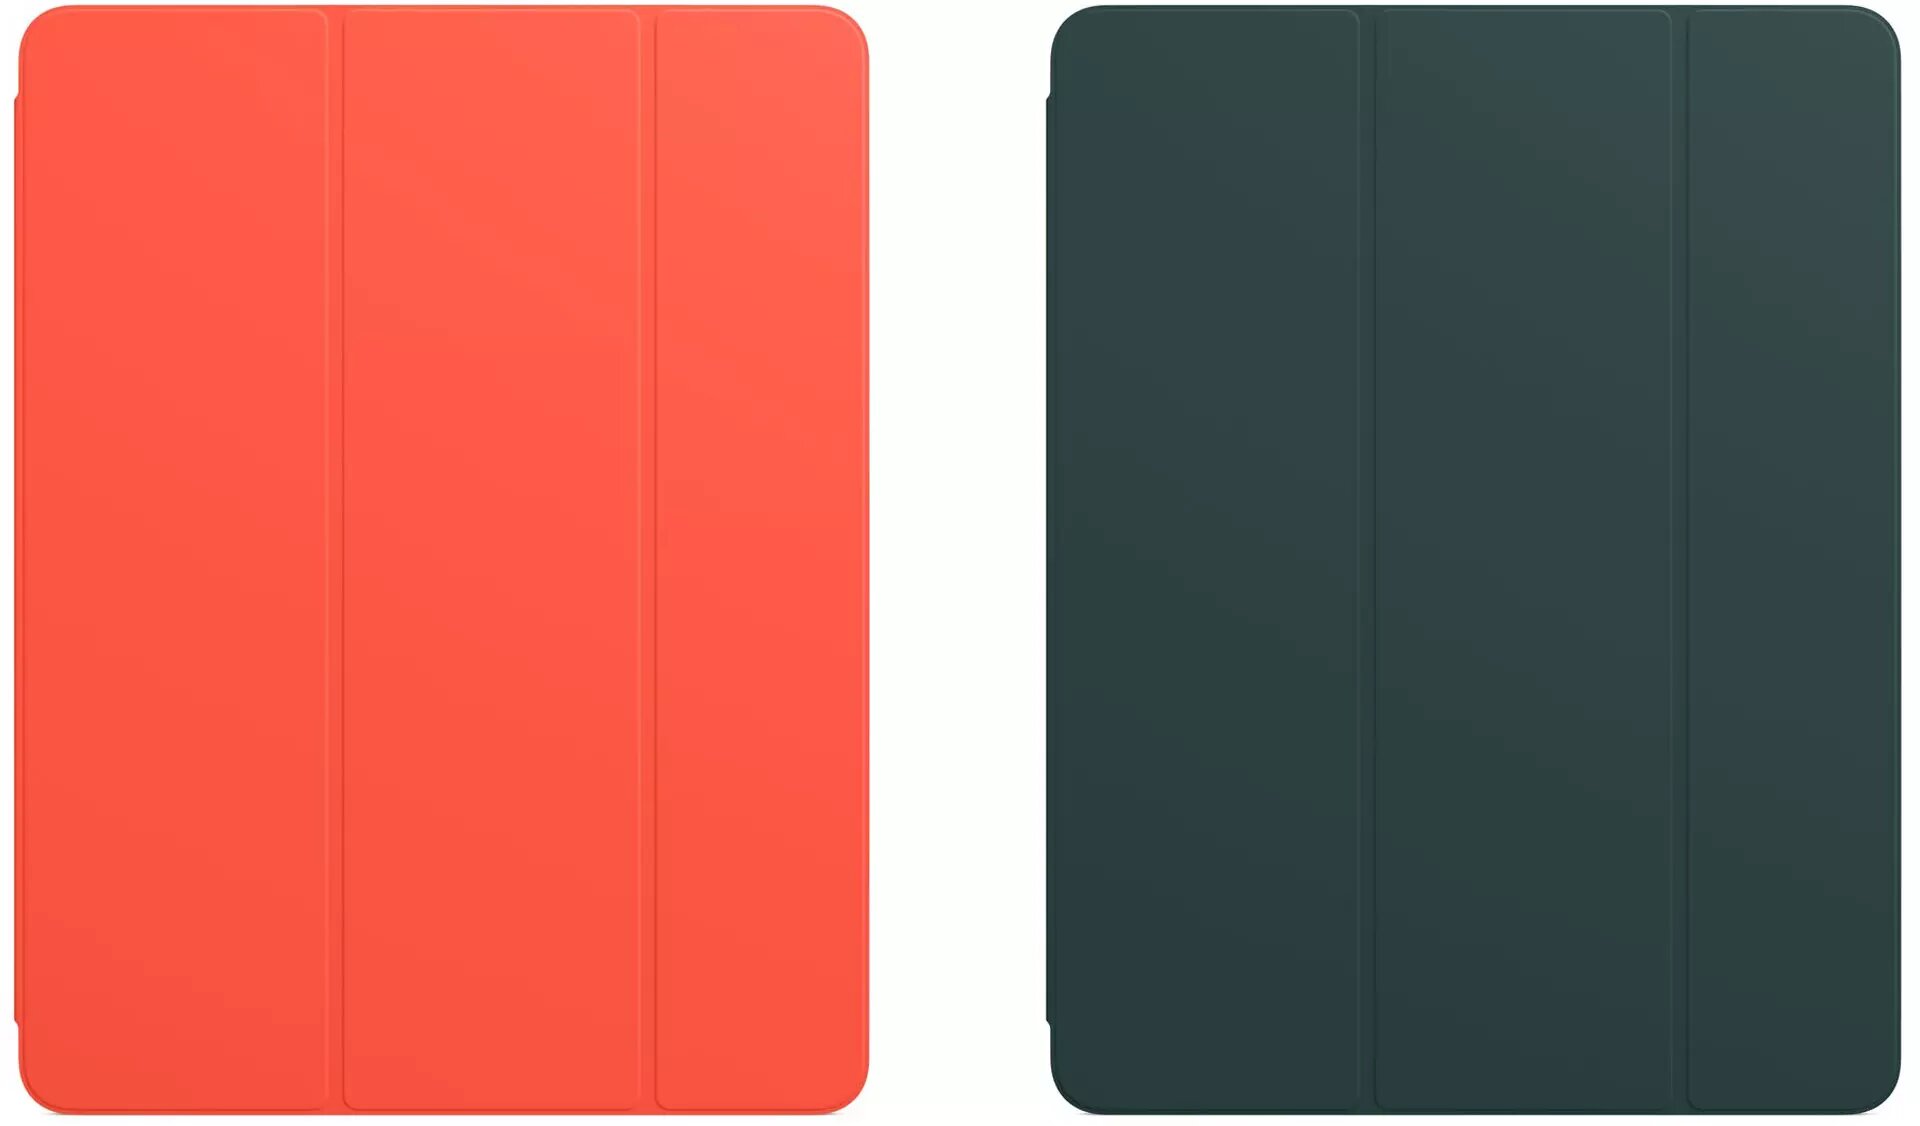 اپل دو رنگ جدید برای اسمارت فولیو و اسمارت کاور آیپد معرفی کرد